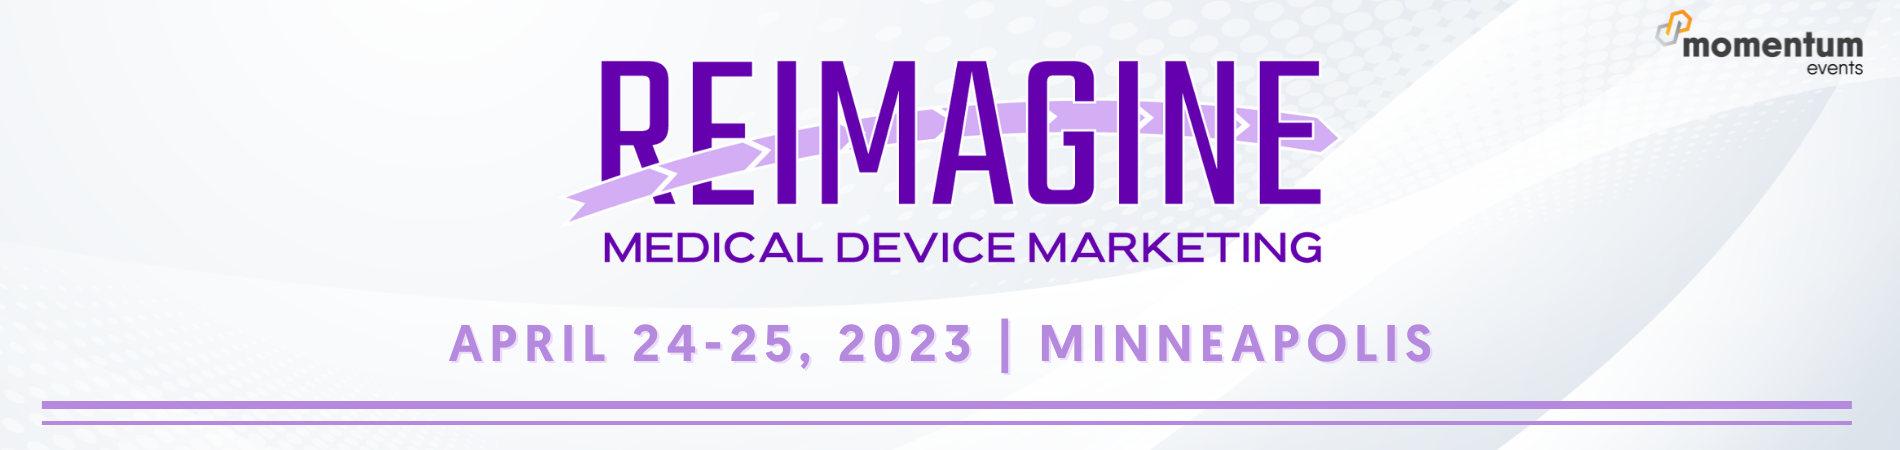 Banner for ReImagine Medical Device Marketing